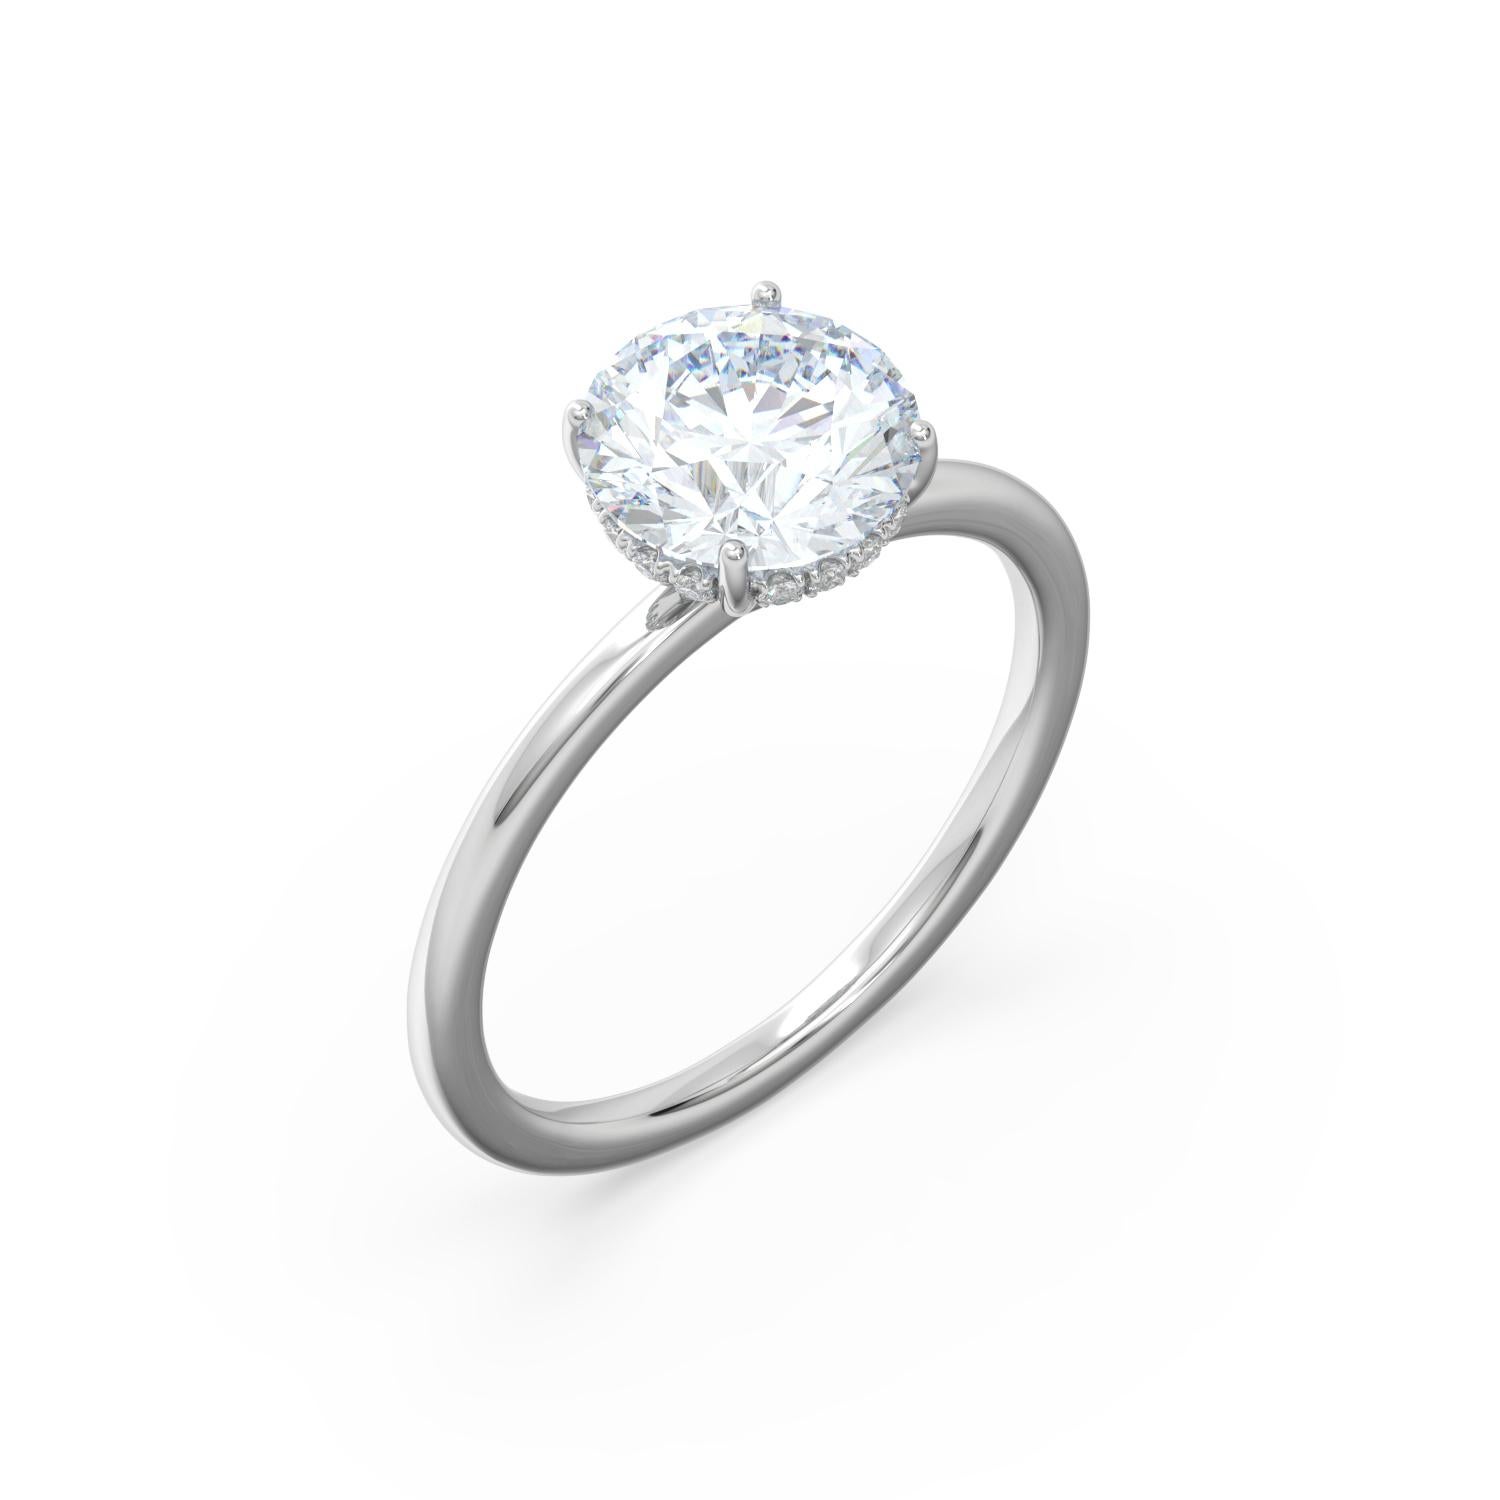 GIA-zertifiziert 2 Karat runder Brillant Verlobungsring mit G Farbe und VS2 Klarheit (**Dieser Ring kann mit einem anderen Diamanten gemacht werden, um Ihr Budget und Geschmack unterzubringen, kontaktieren Sie bitte für weitere Details). Der Diamant